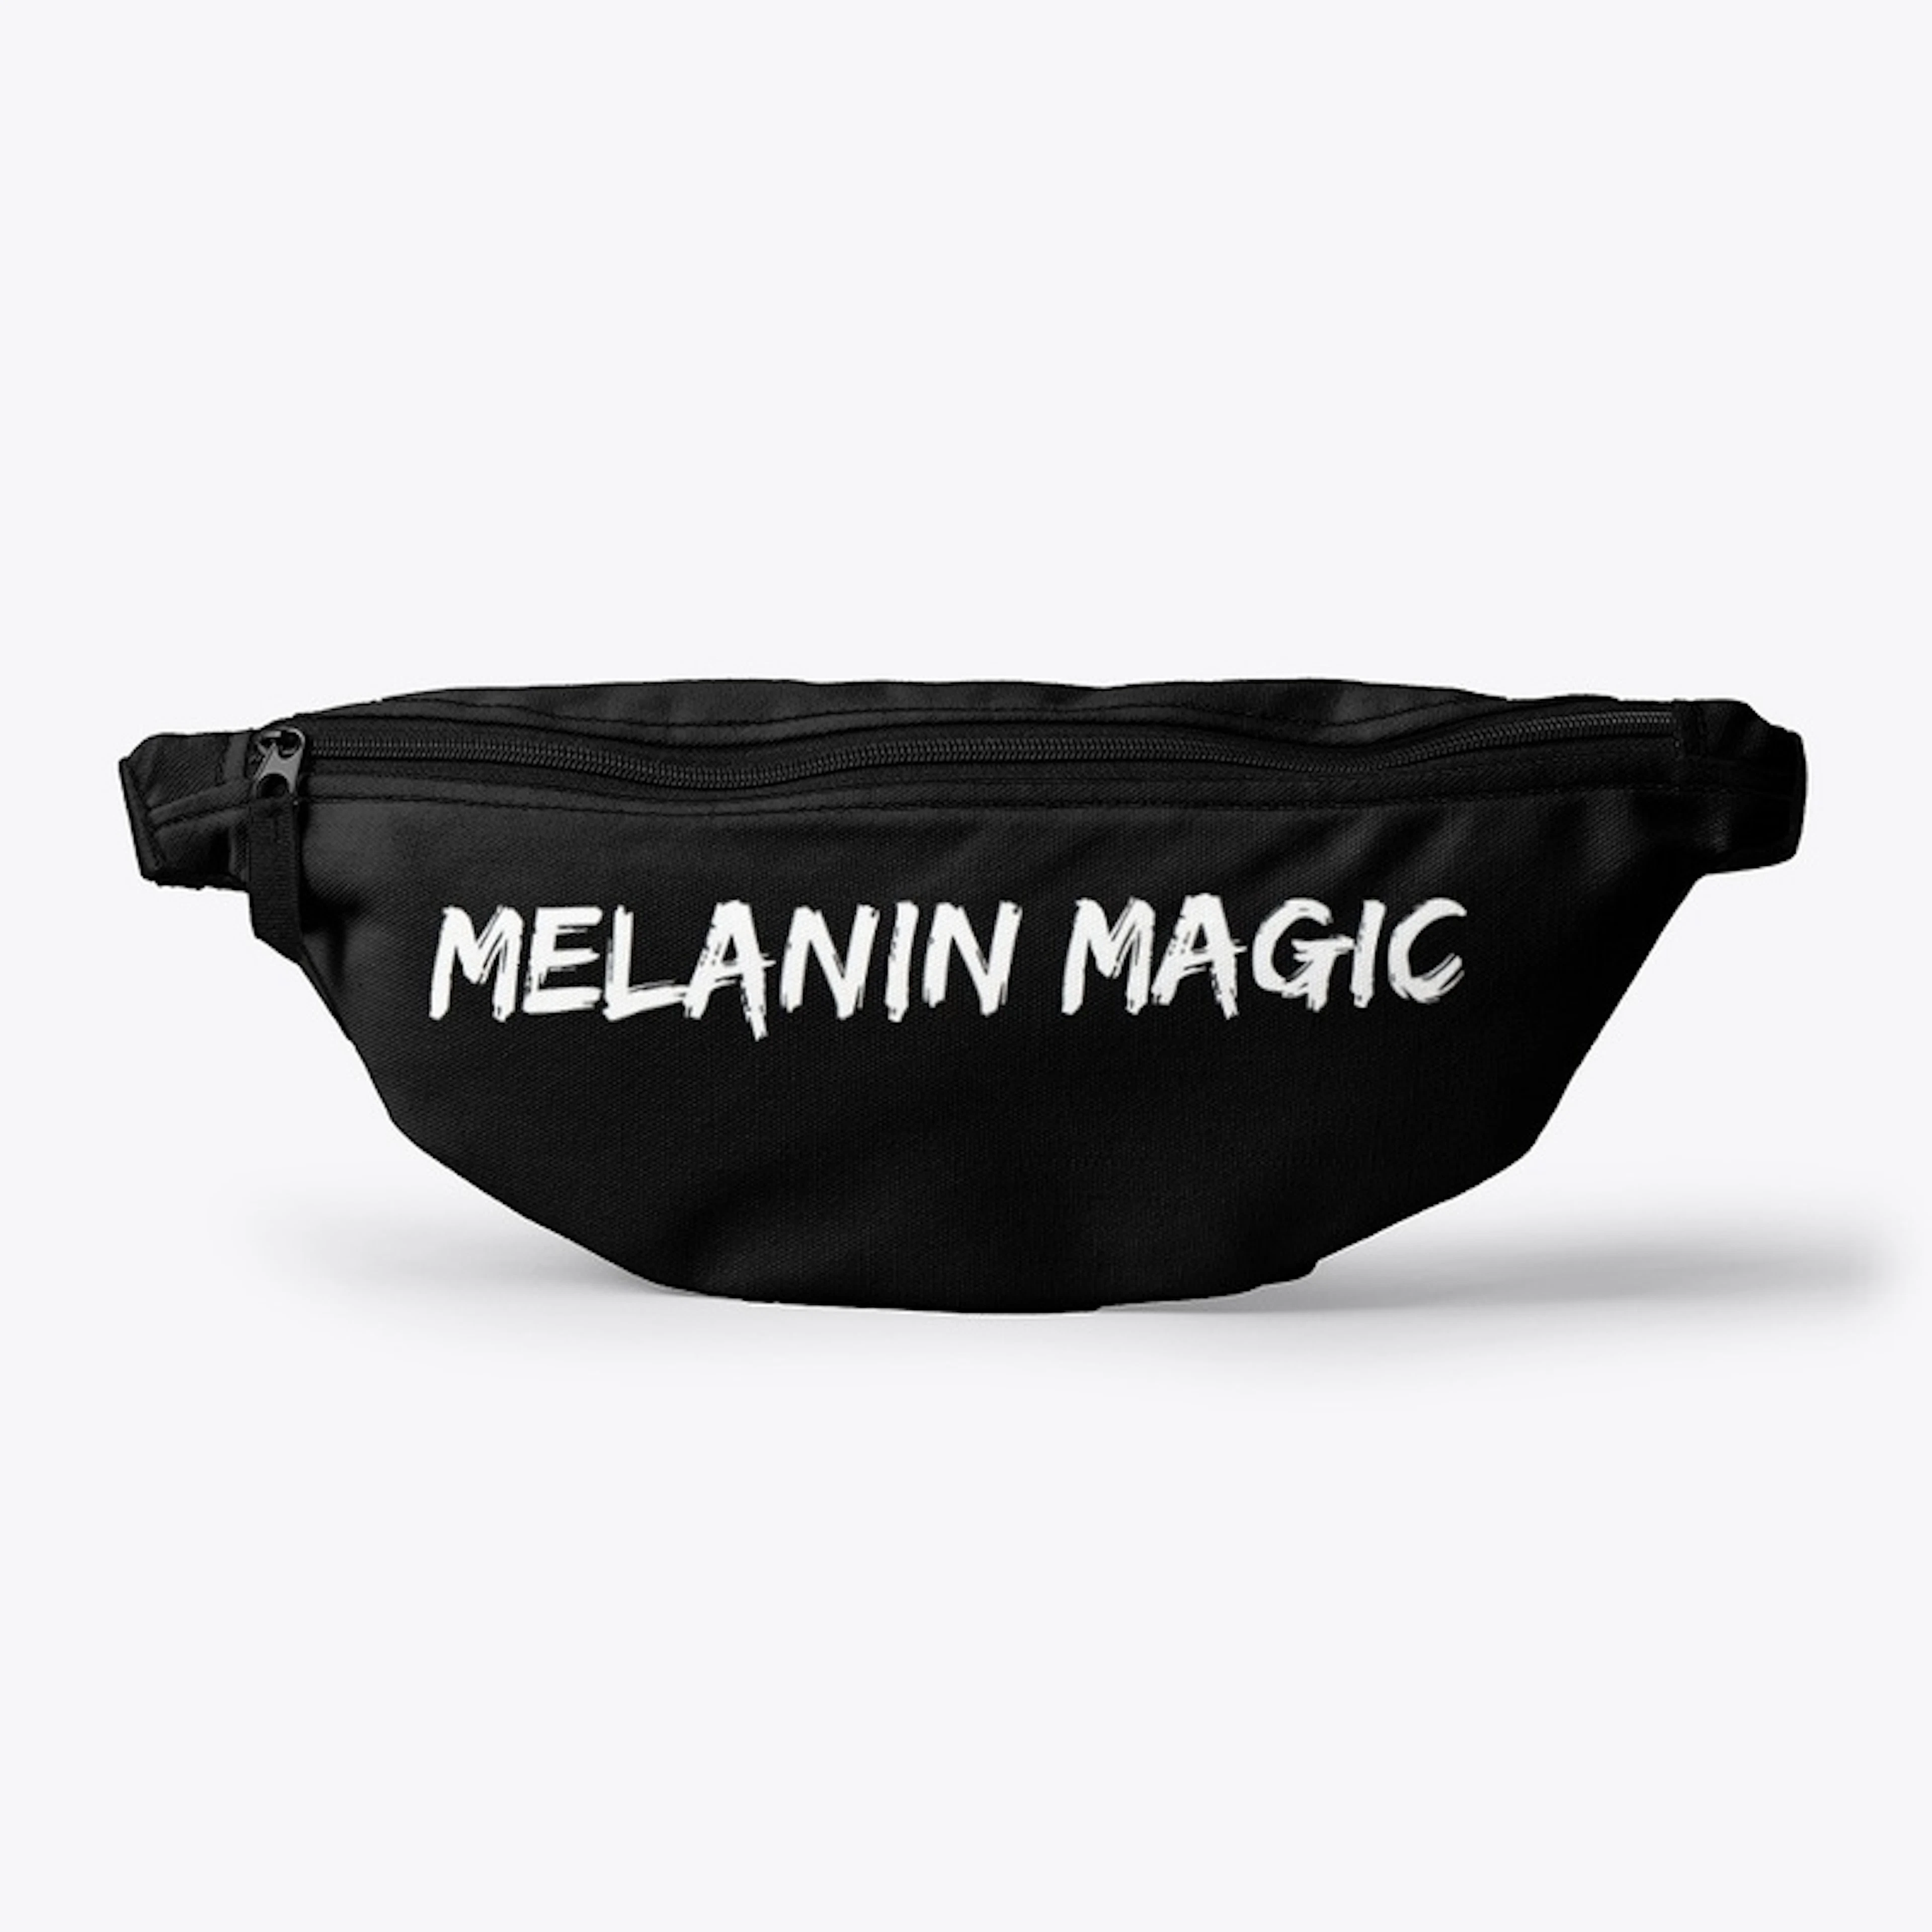 Melanin Magic Accessories Too 